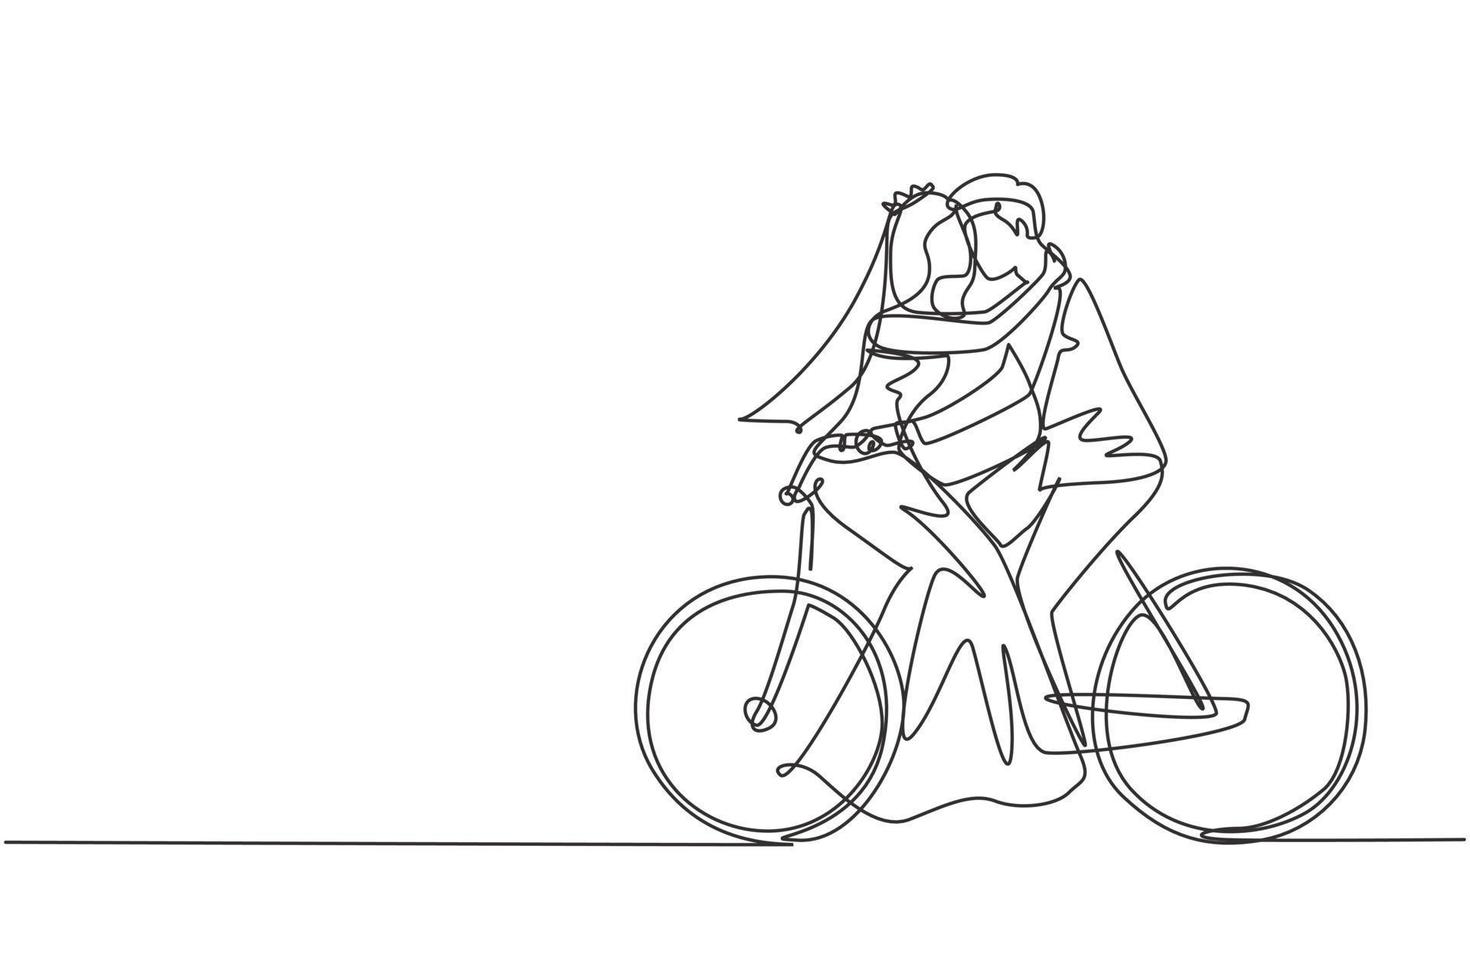 einzelne linie, die aktives verheiratetes paar zeichnet, das zusammen auf dem fahrrad fährt. Fröhlicher, süßer, verliebter Mann und Frau, Radfahrer, die sich umarmen und das Gefühl haben, Liebe zu tragen, die ein Hochzeitskleid trägt. Design-Grafikvektor mit kontinuierlicher Linie vektor